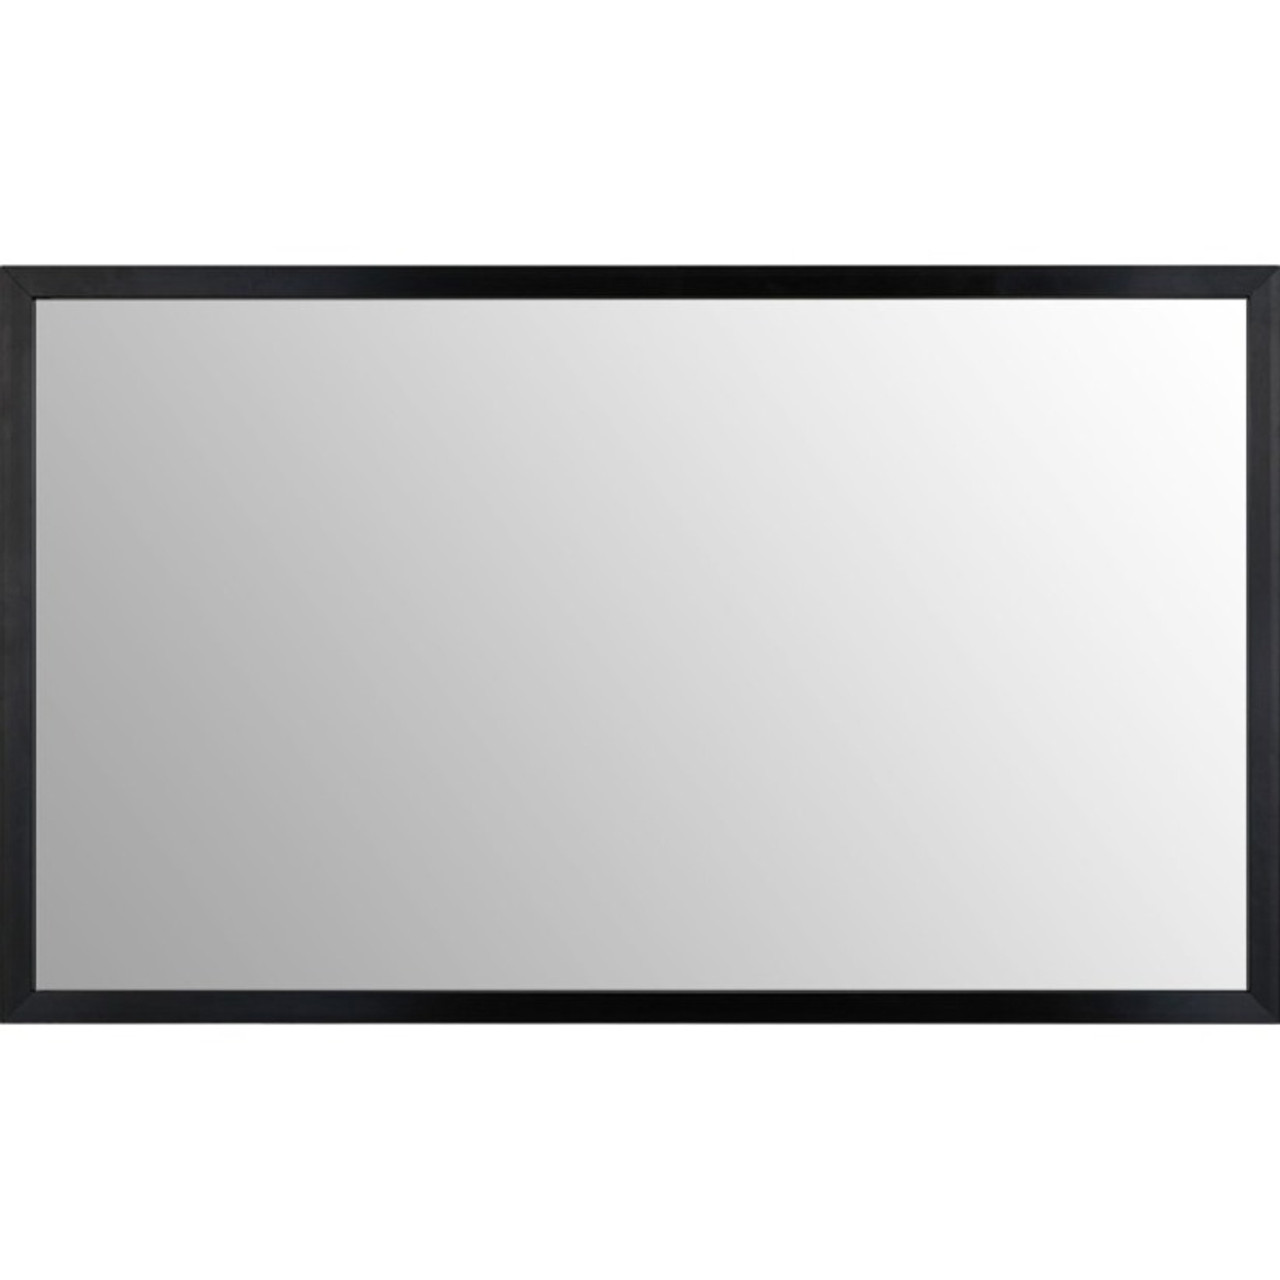 LG KT-T32E Touchscreen Overlay - KT-T32E